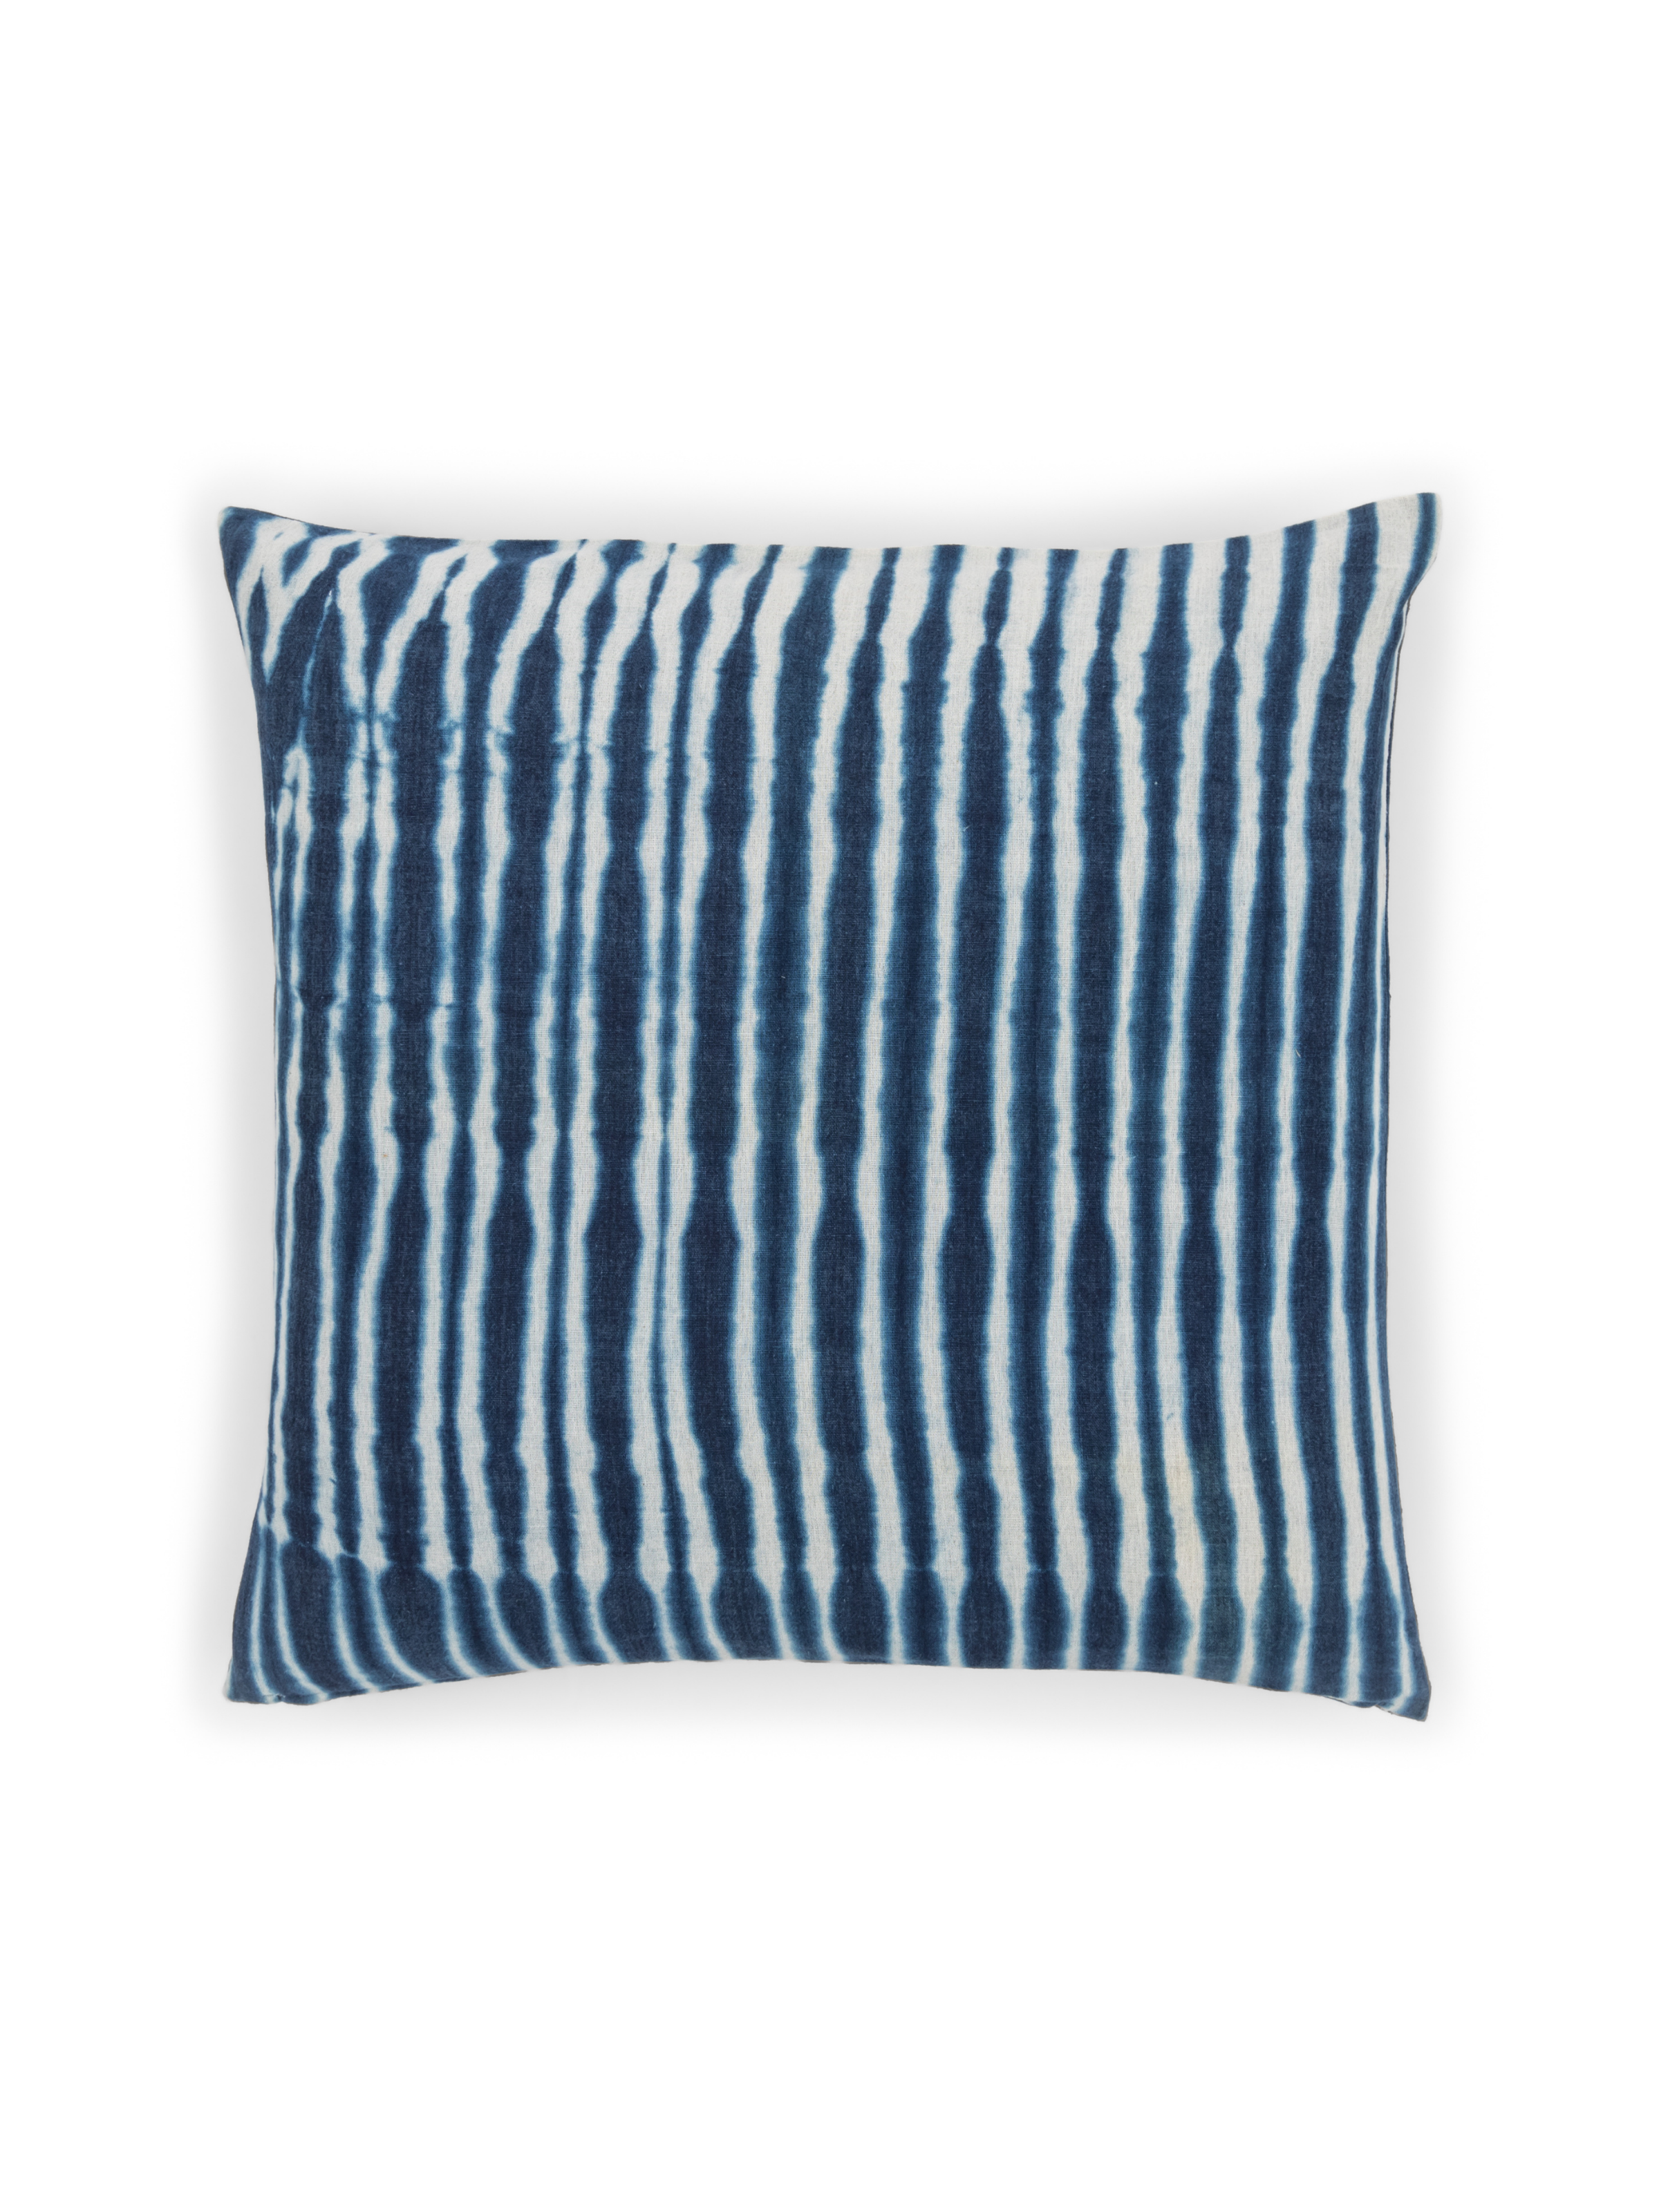 Indigo Stripe Tye Dye Square Pillow